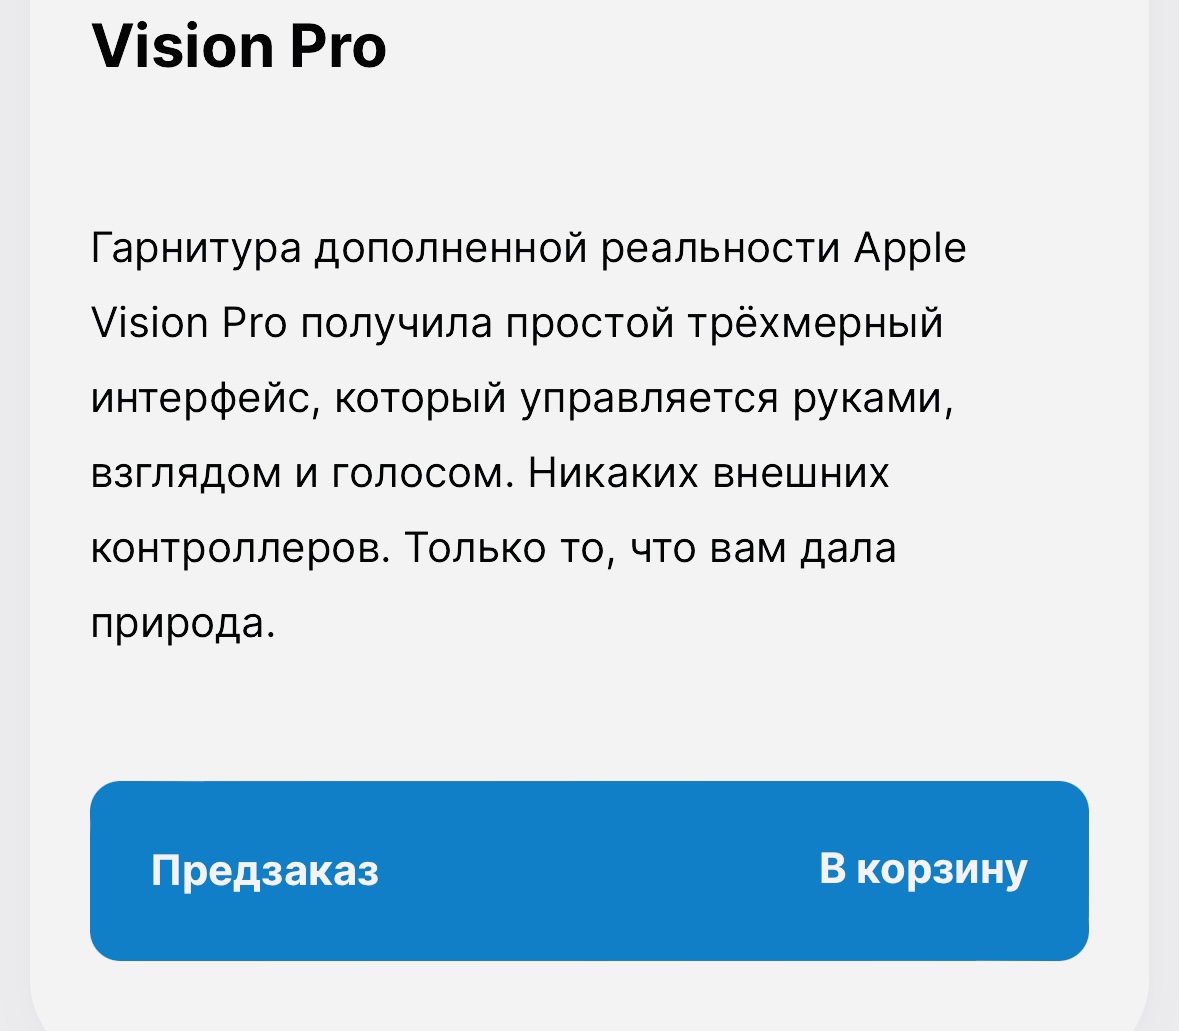 Ноунейм-магазины в России запустили предзаказ на шлем Apple Vision Pro. Цены в два раза дороже